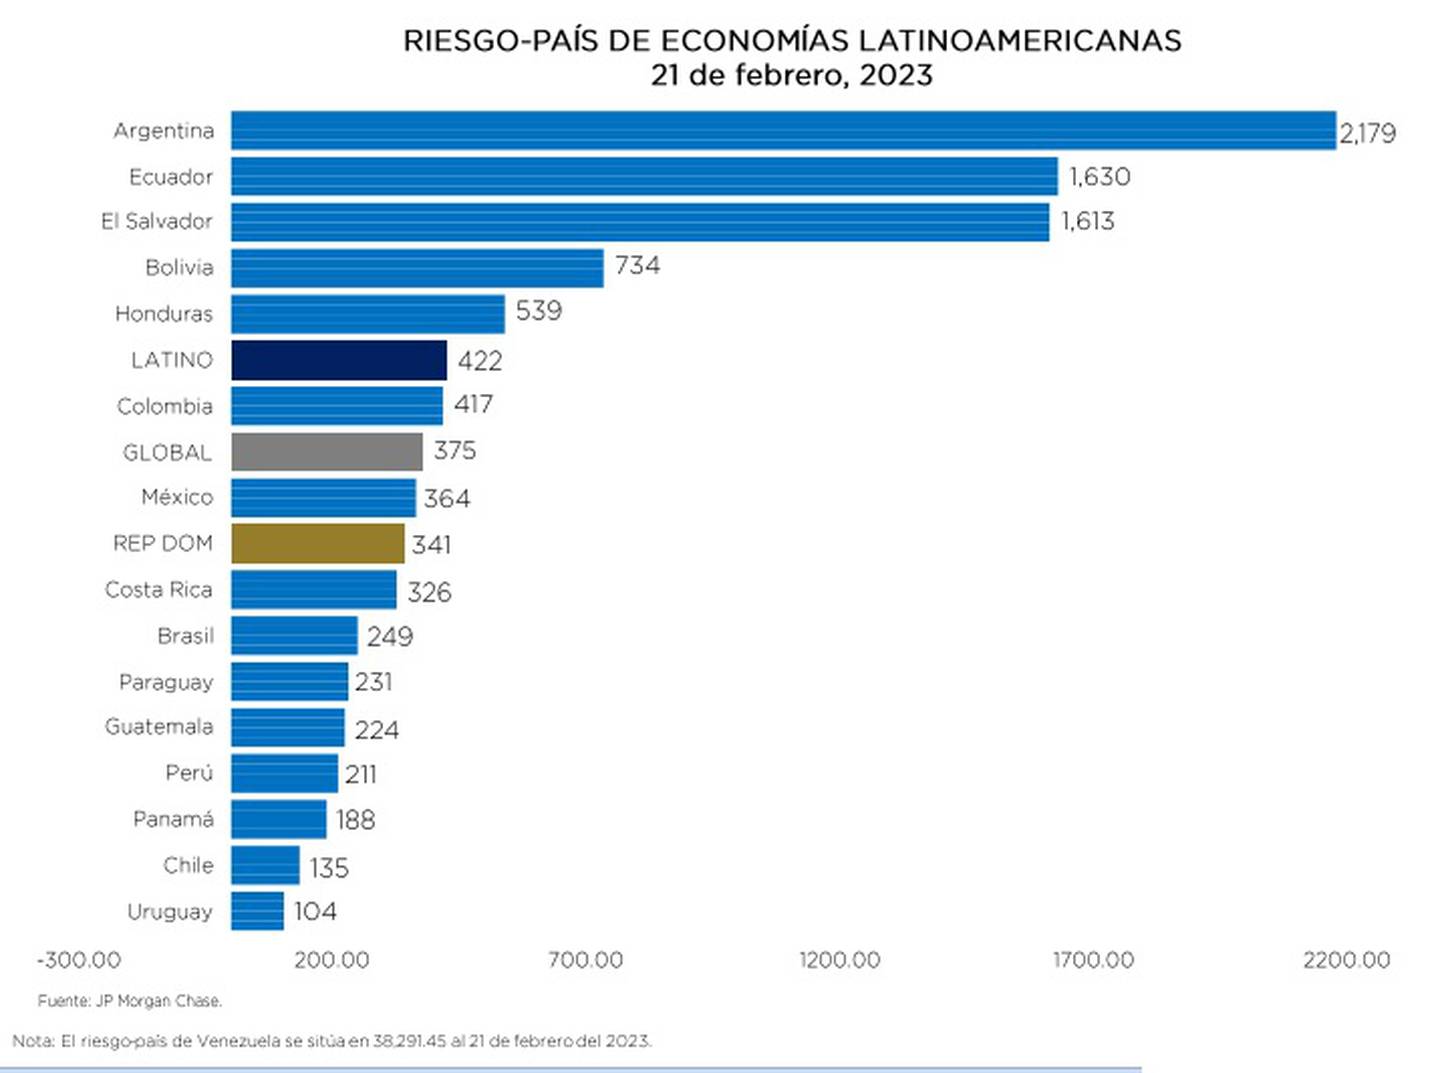 Fuente: Banco Central de República Dominicana en base a JP Morgandfd